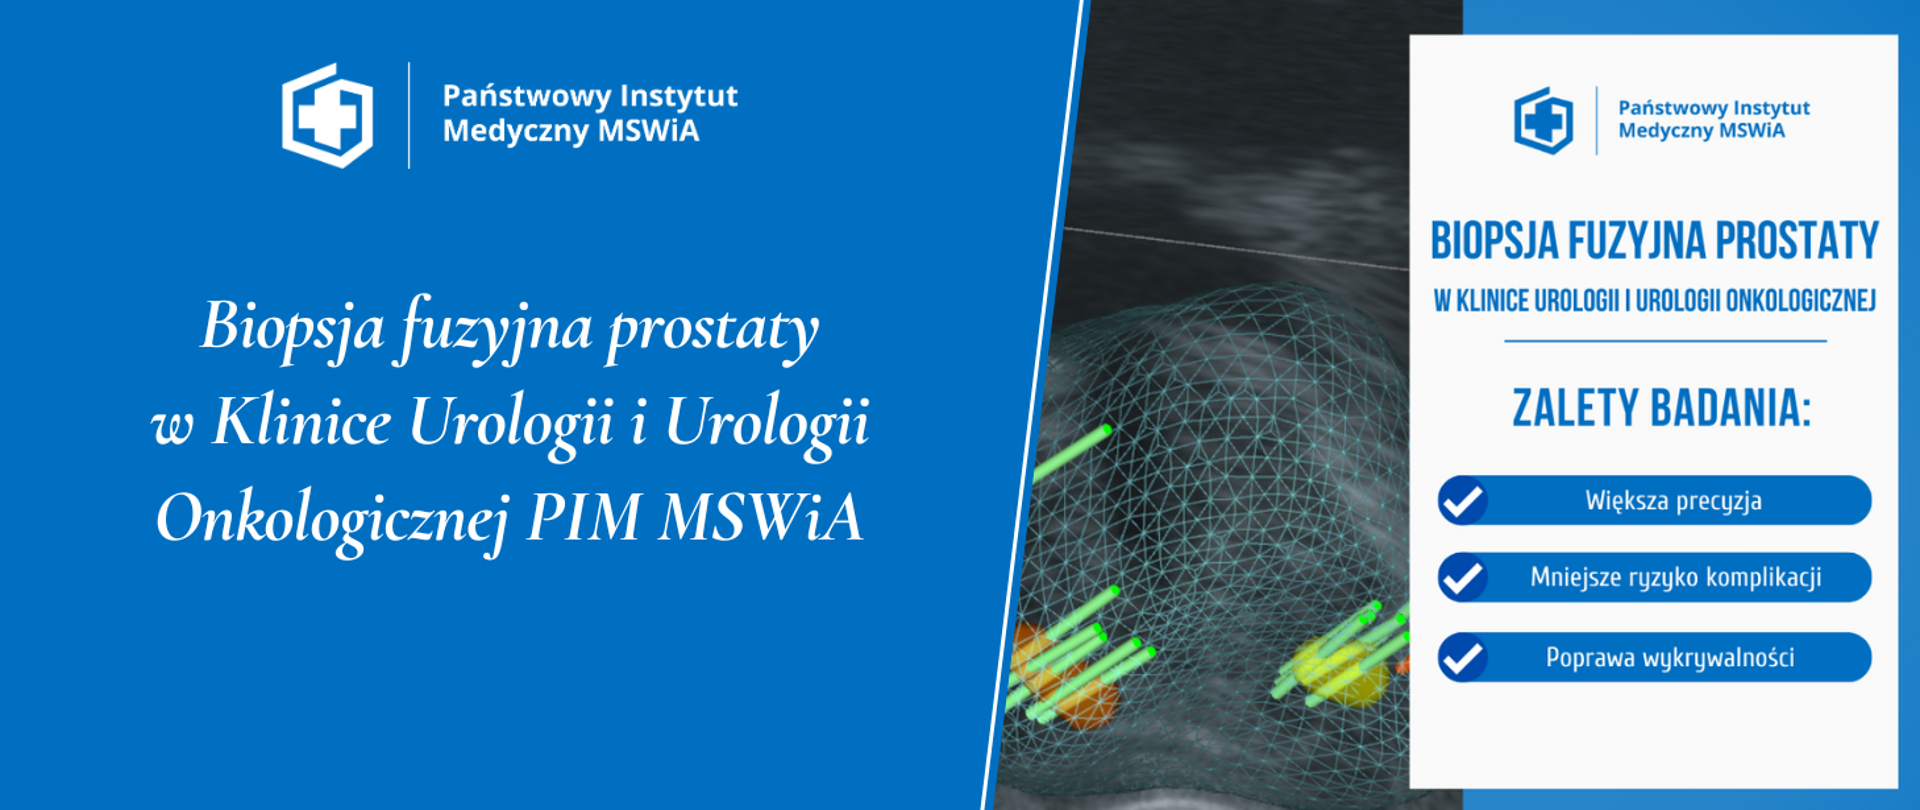 Biopsja fuzyjna prostaty
w Klinice Urologii i Urologii Onkologicznej PIM MSWiA